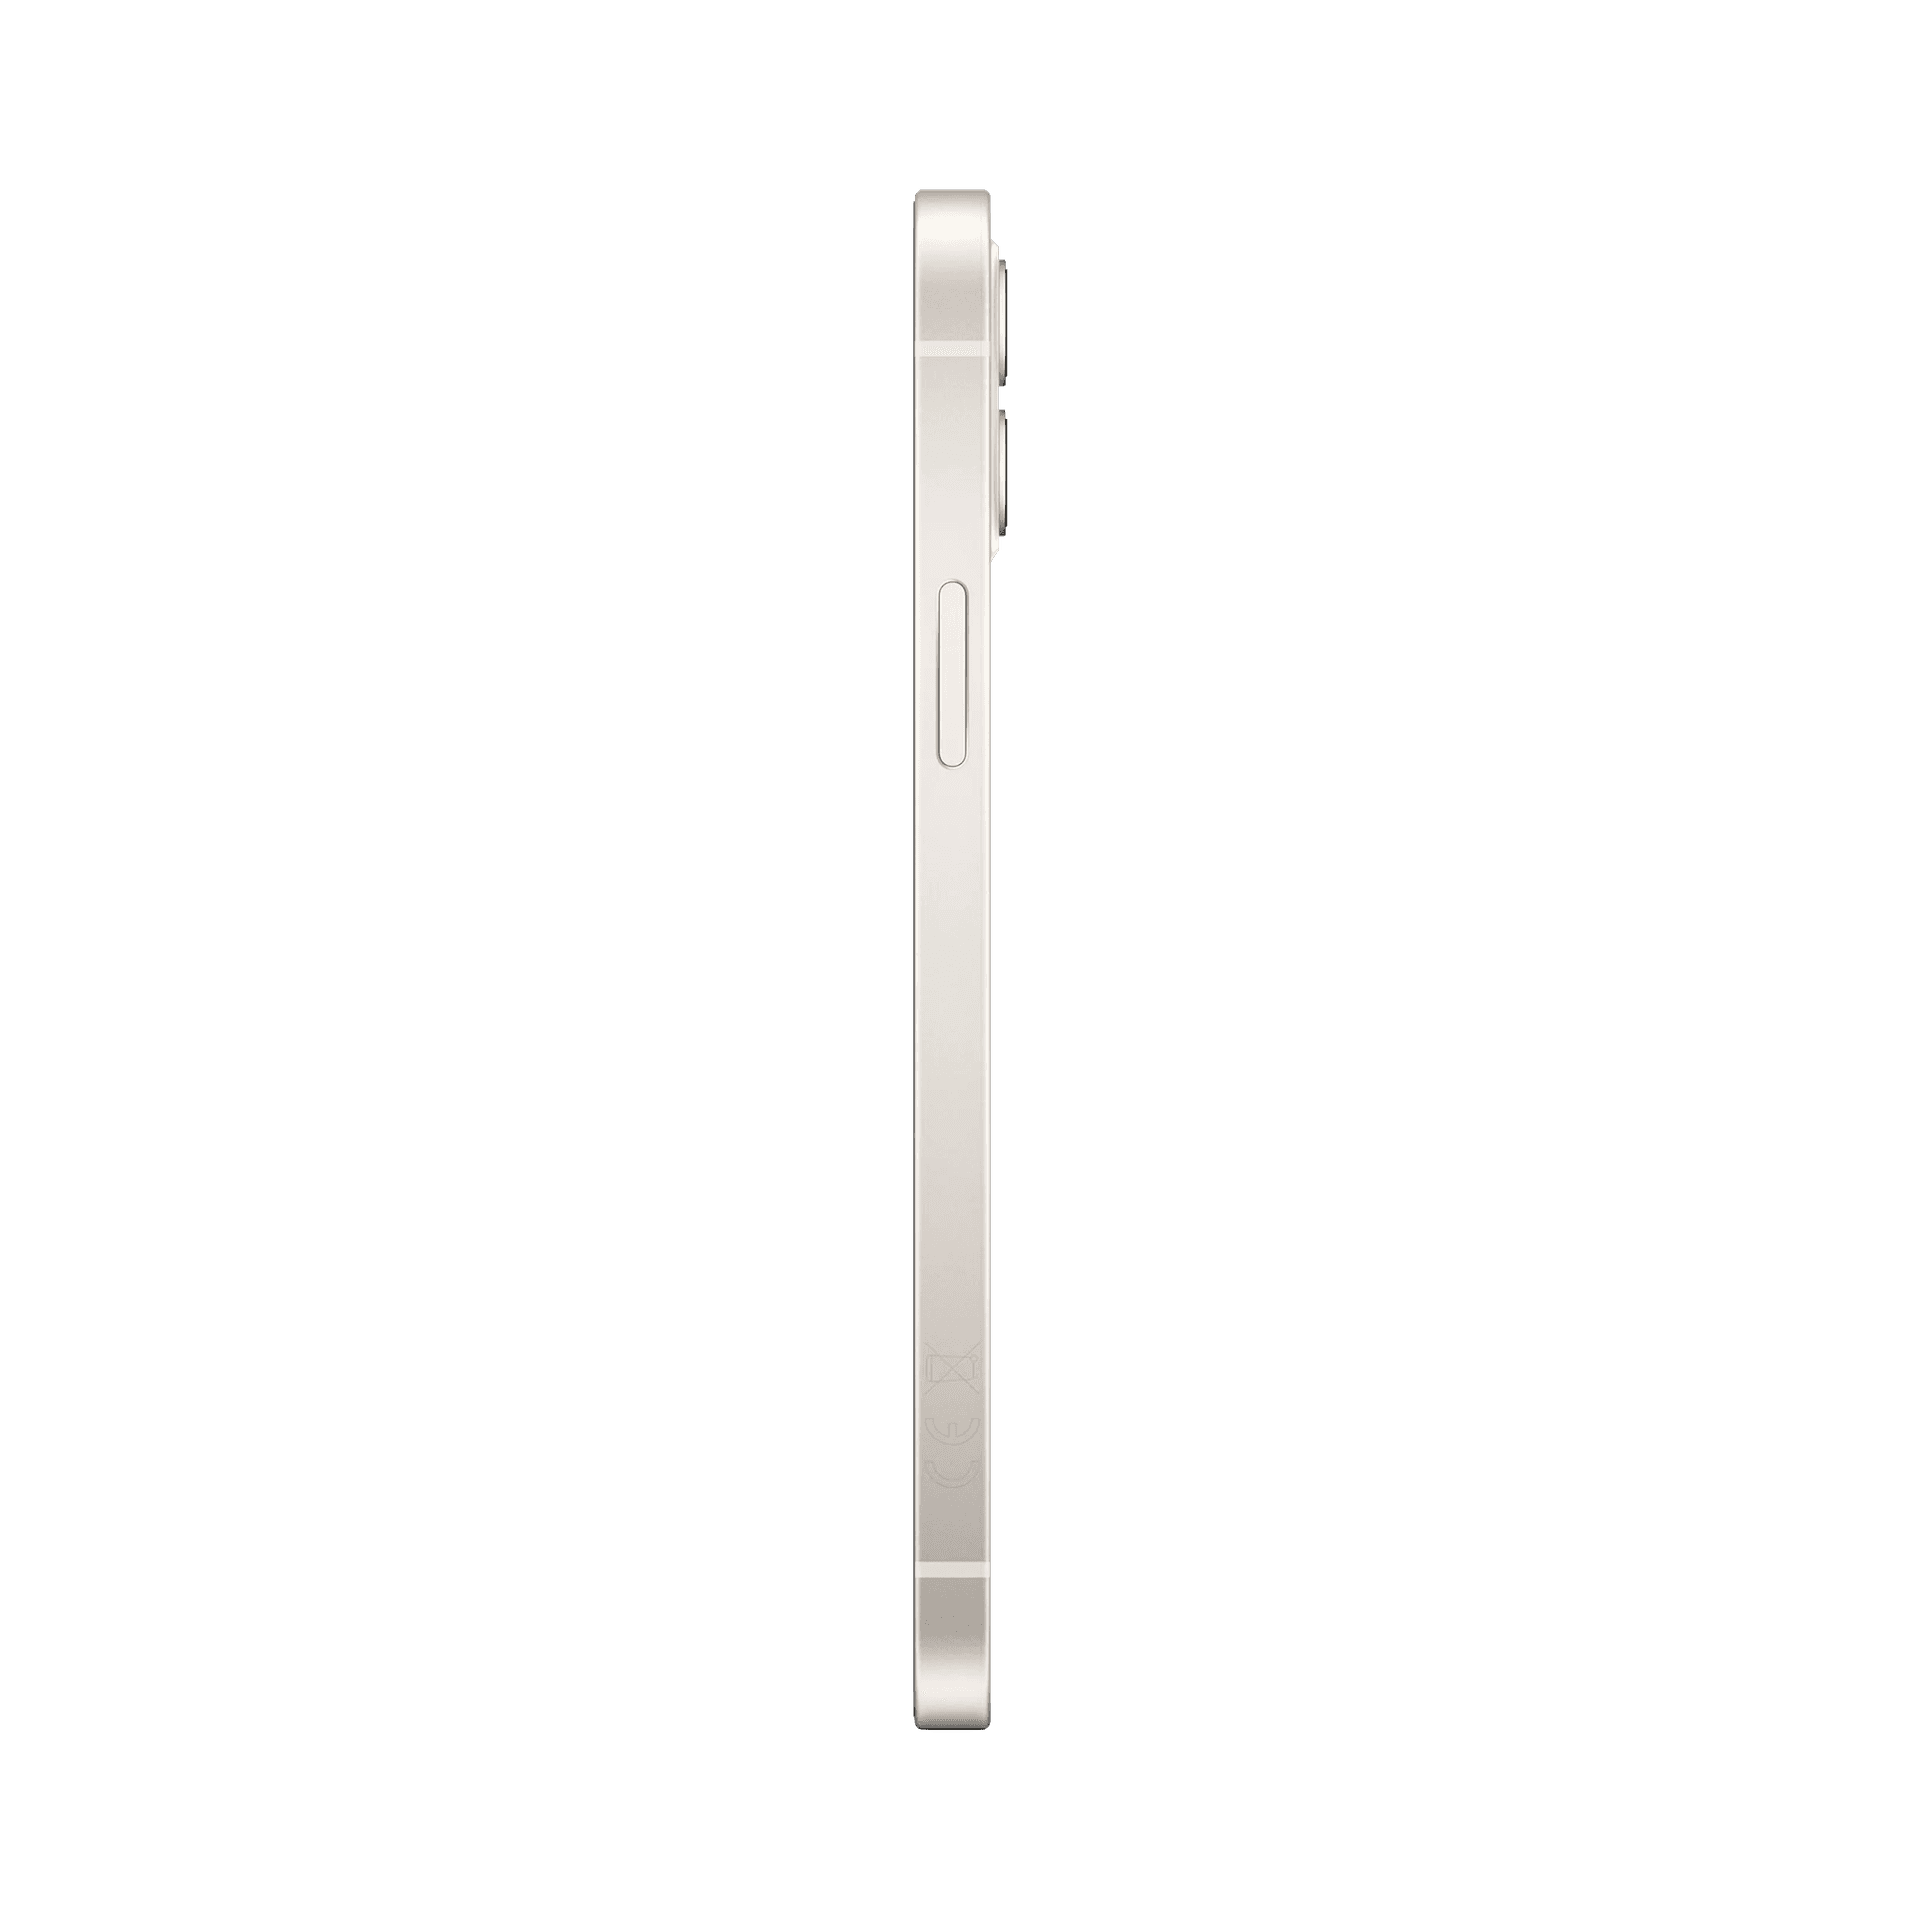 Apple iPhone 12 - 128 GB - Beyaz